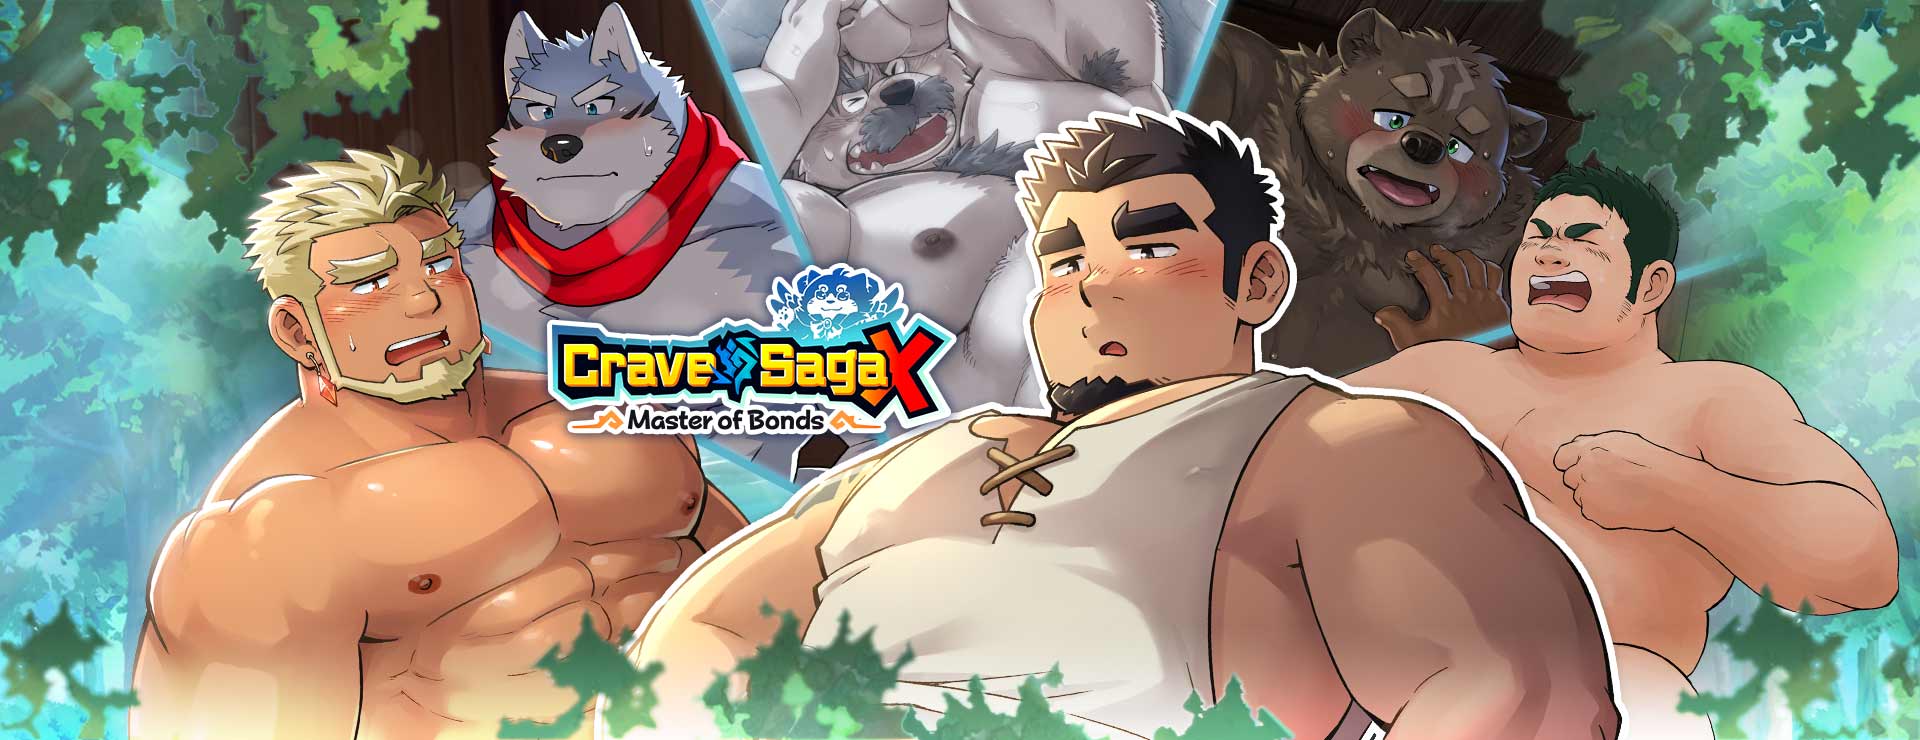 Crave Saga X - Master of Bonds - Adventure Game